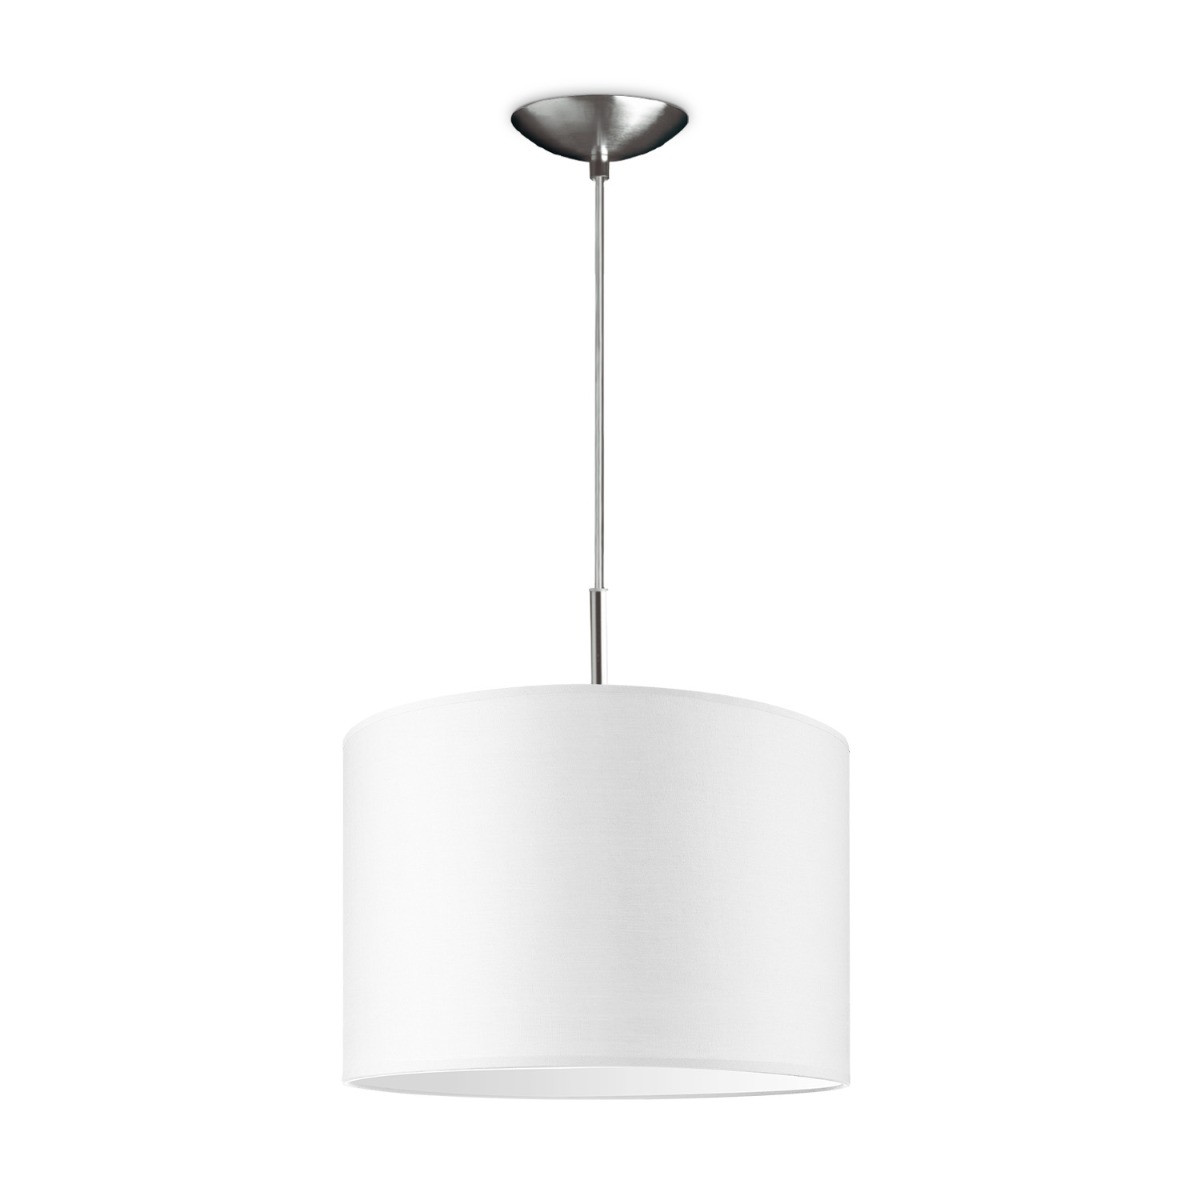 Light depot - hanglamp tube deluxe bling Ø 30 cm - wit - Outlet